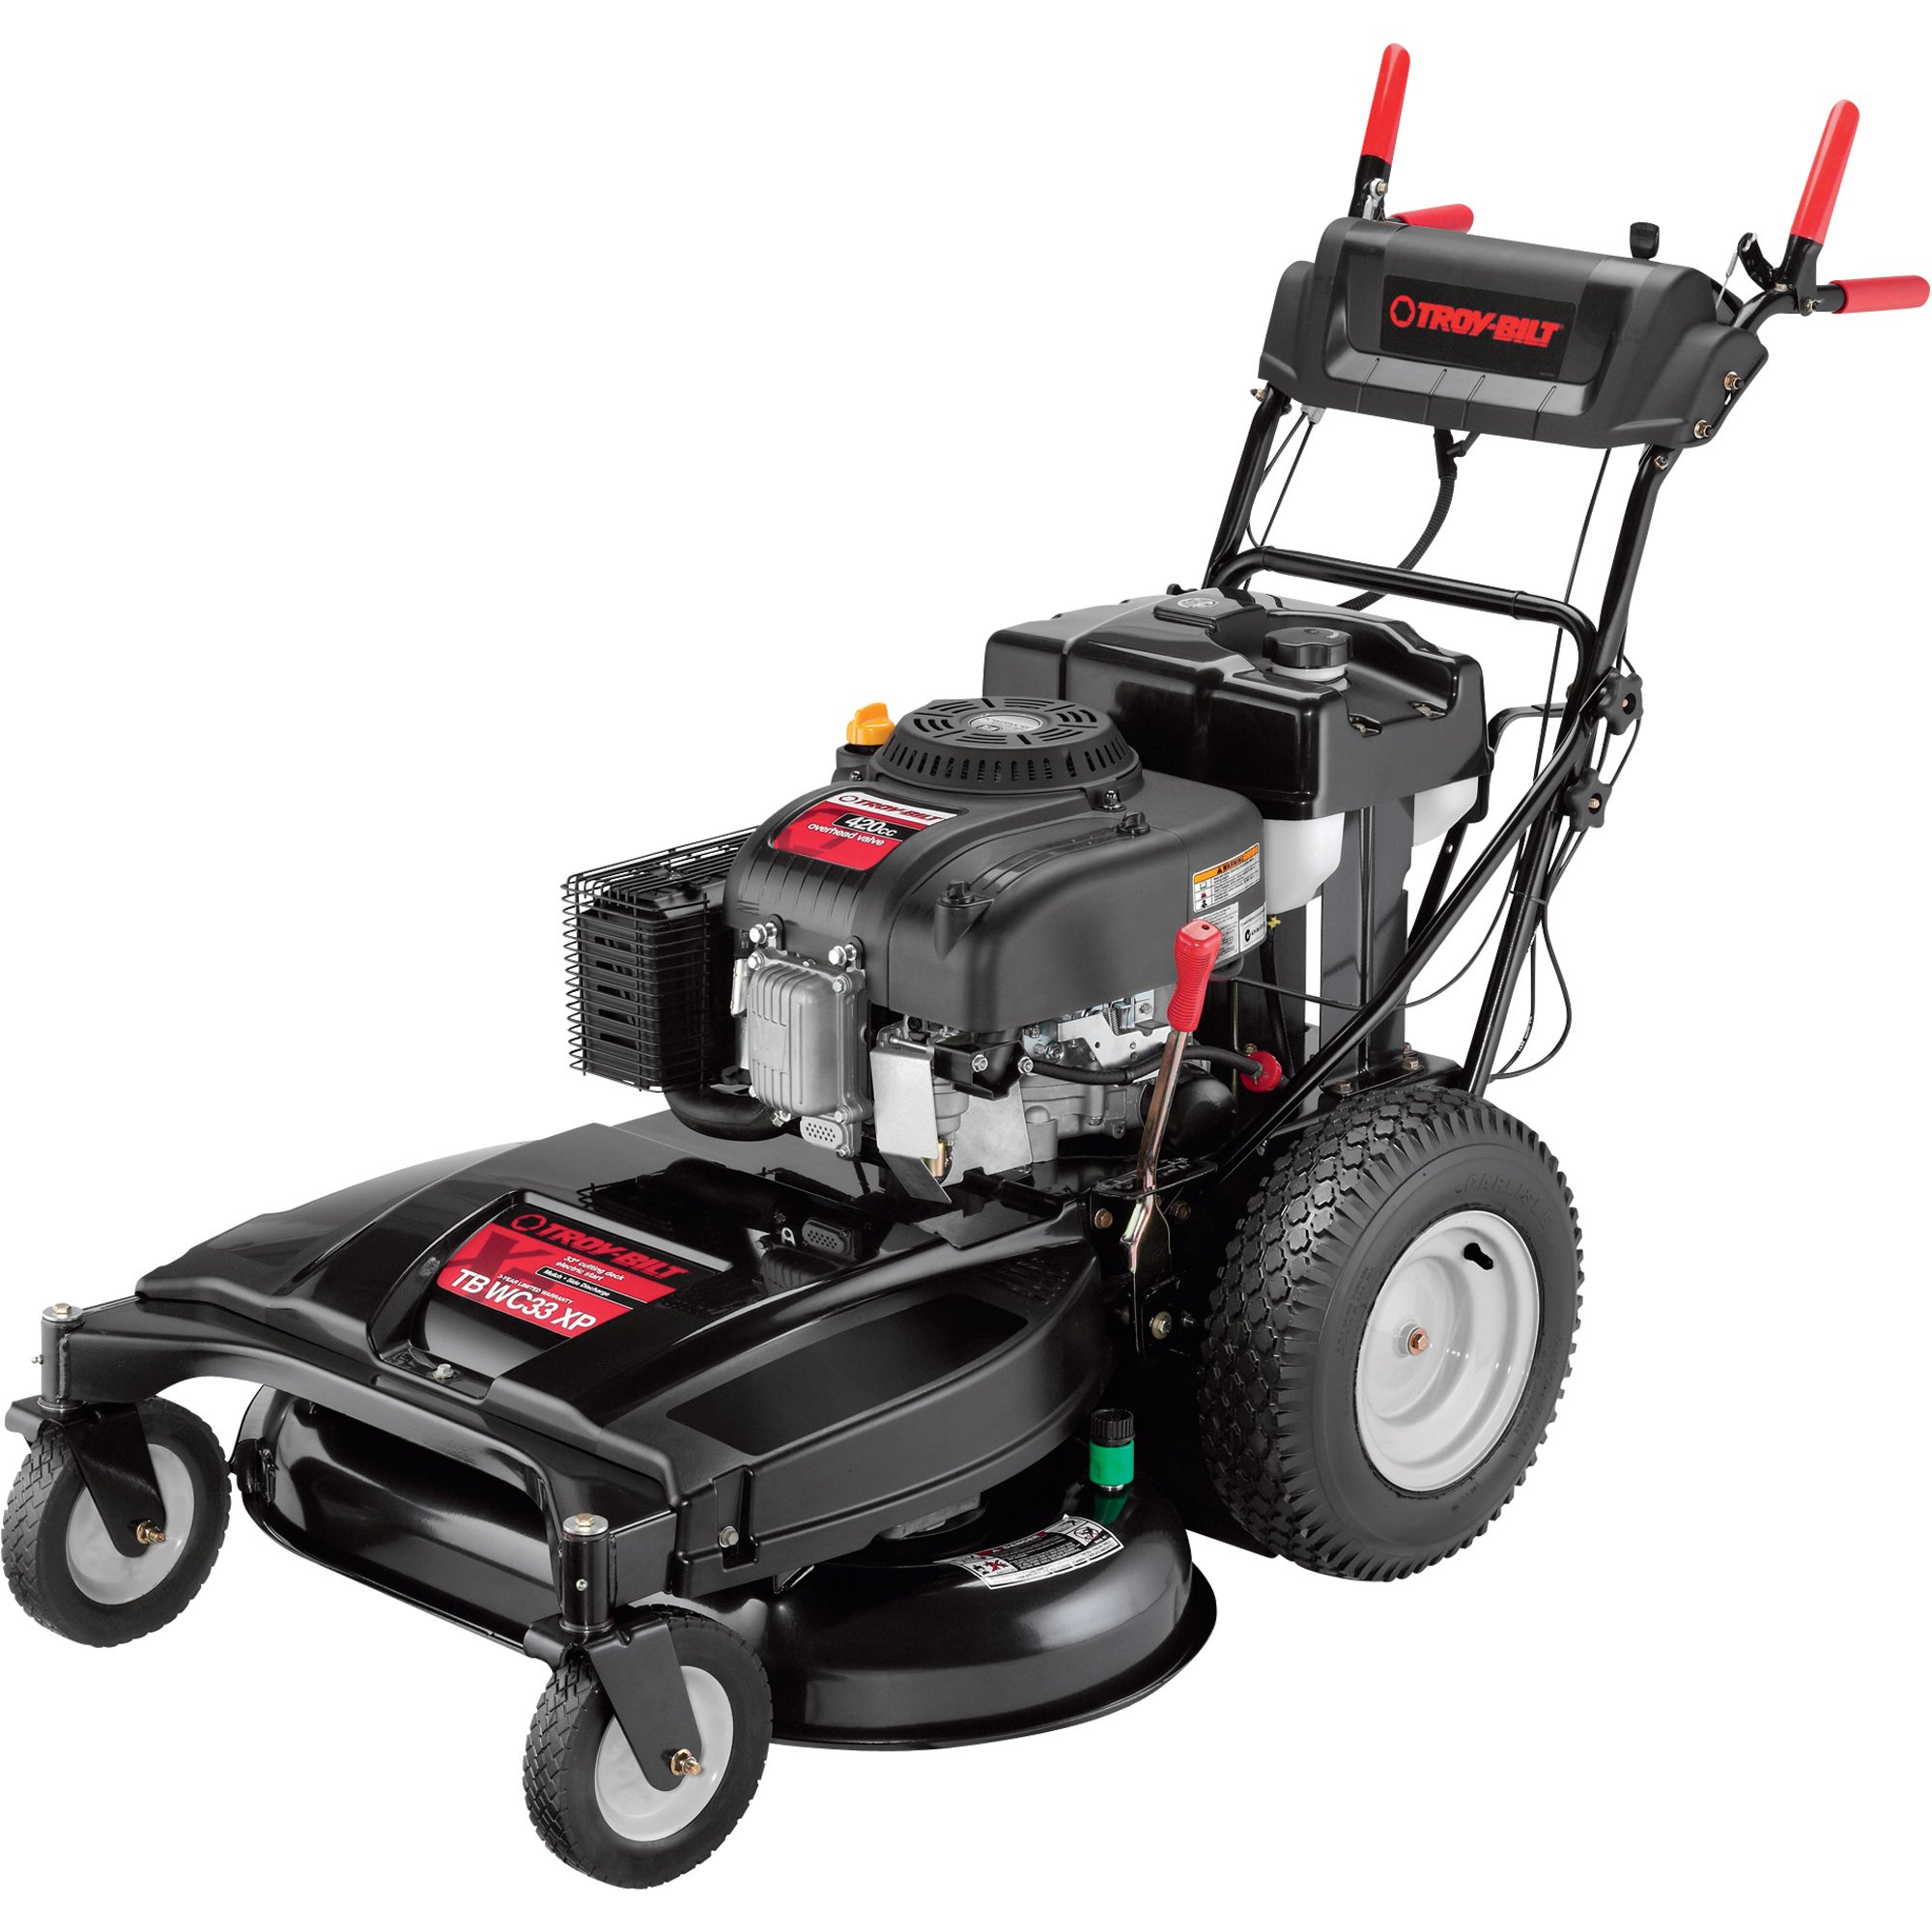 Troy-Bilt Self-Propelled Push Lawn Mower — 420cc Troy-Bilt Engine